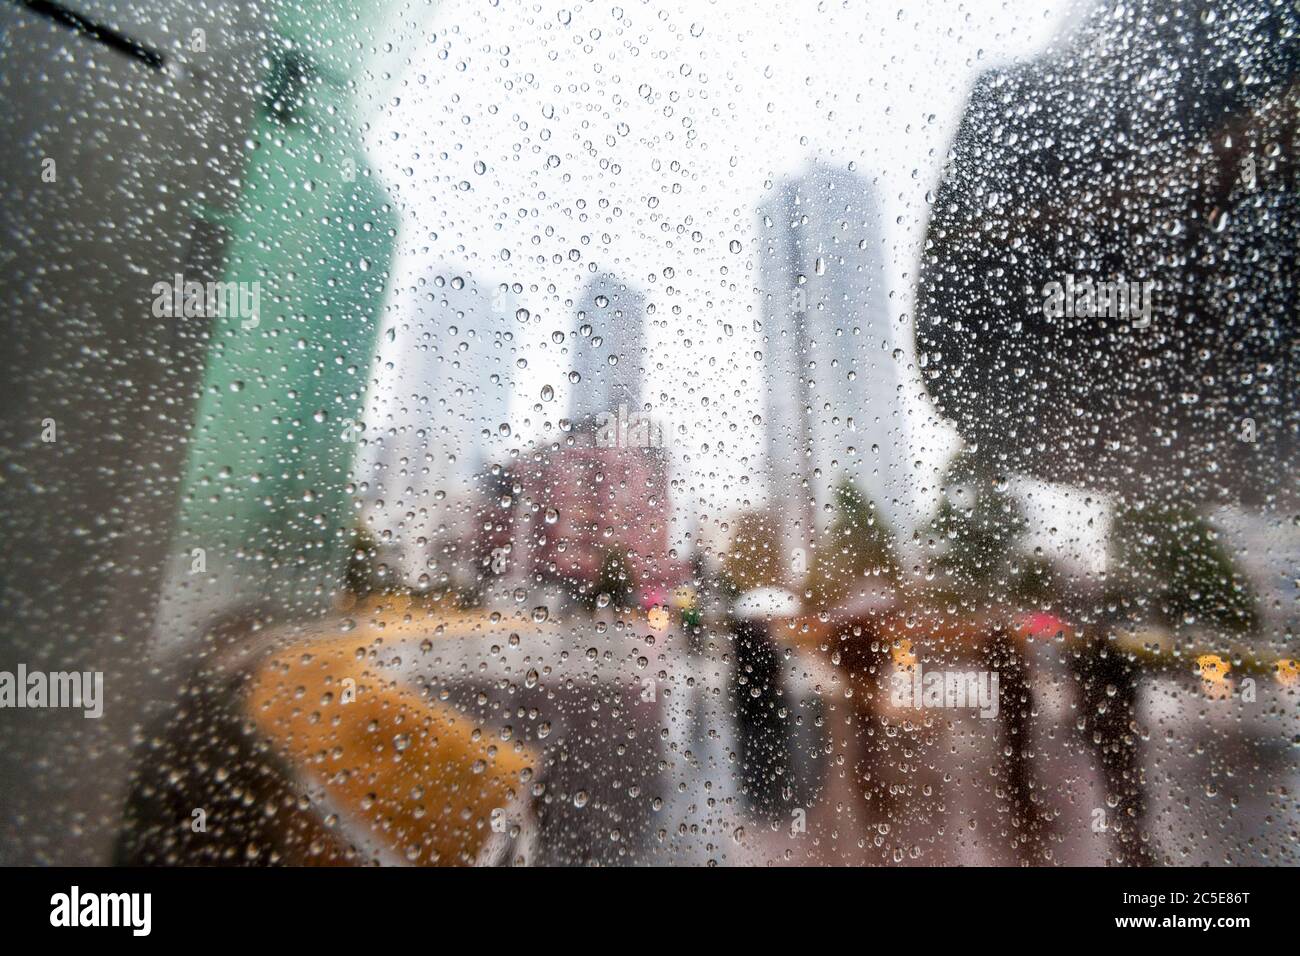 Des gouttes de pluie sur une fenêtre à l'architecture moderne de la ville et des personnes portant des parasols hors-focus dans l'arrière-plan. Banque D'Images